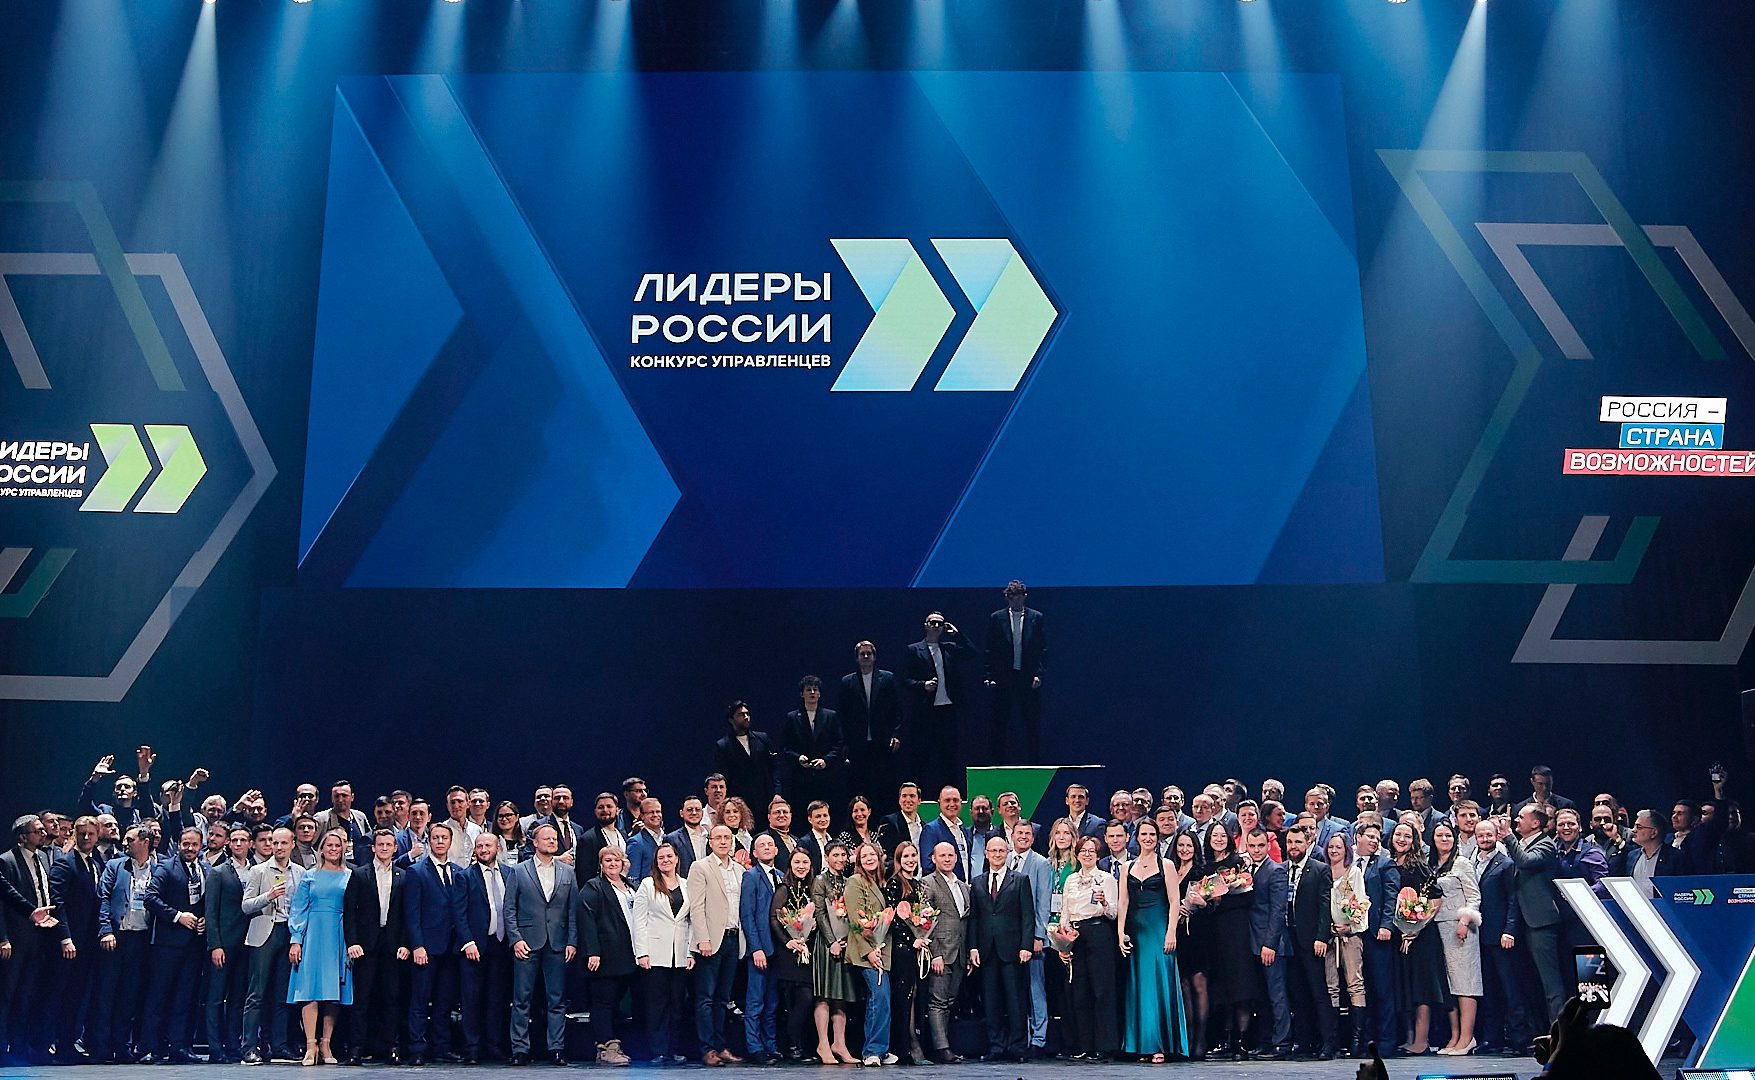 Подведены итоги конкурса «Лидеры России»: 20% лидеров — айтишники